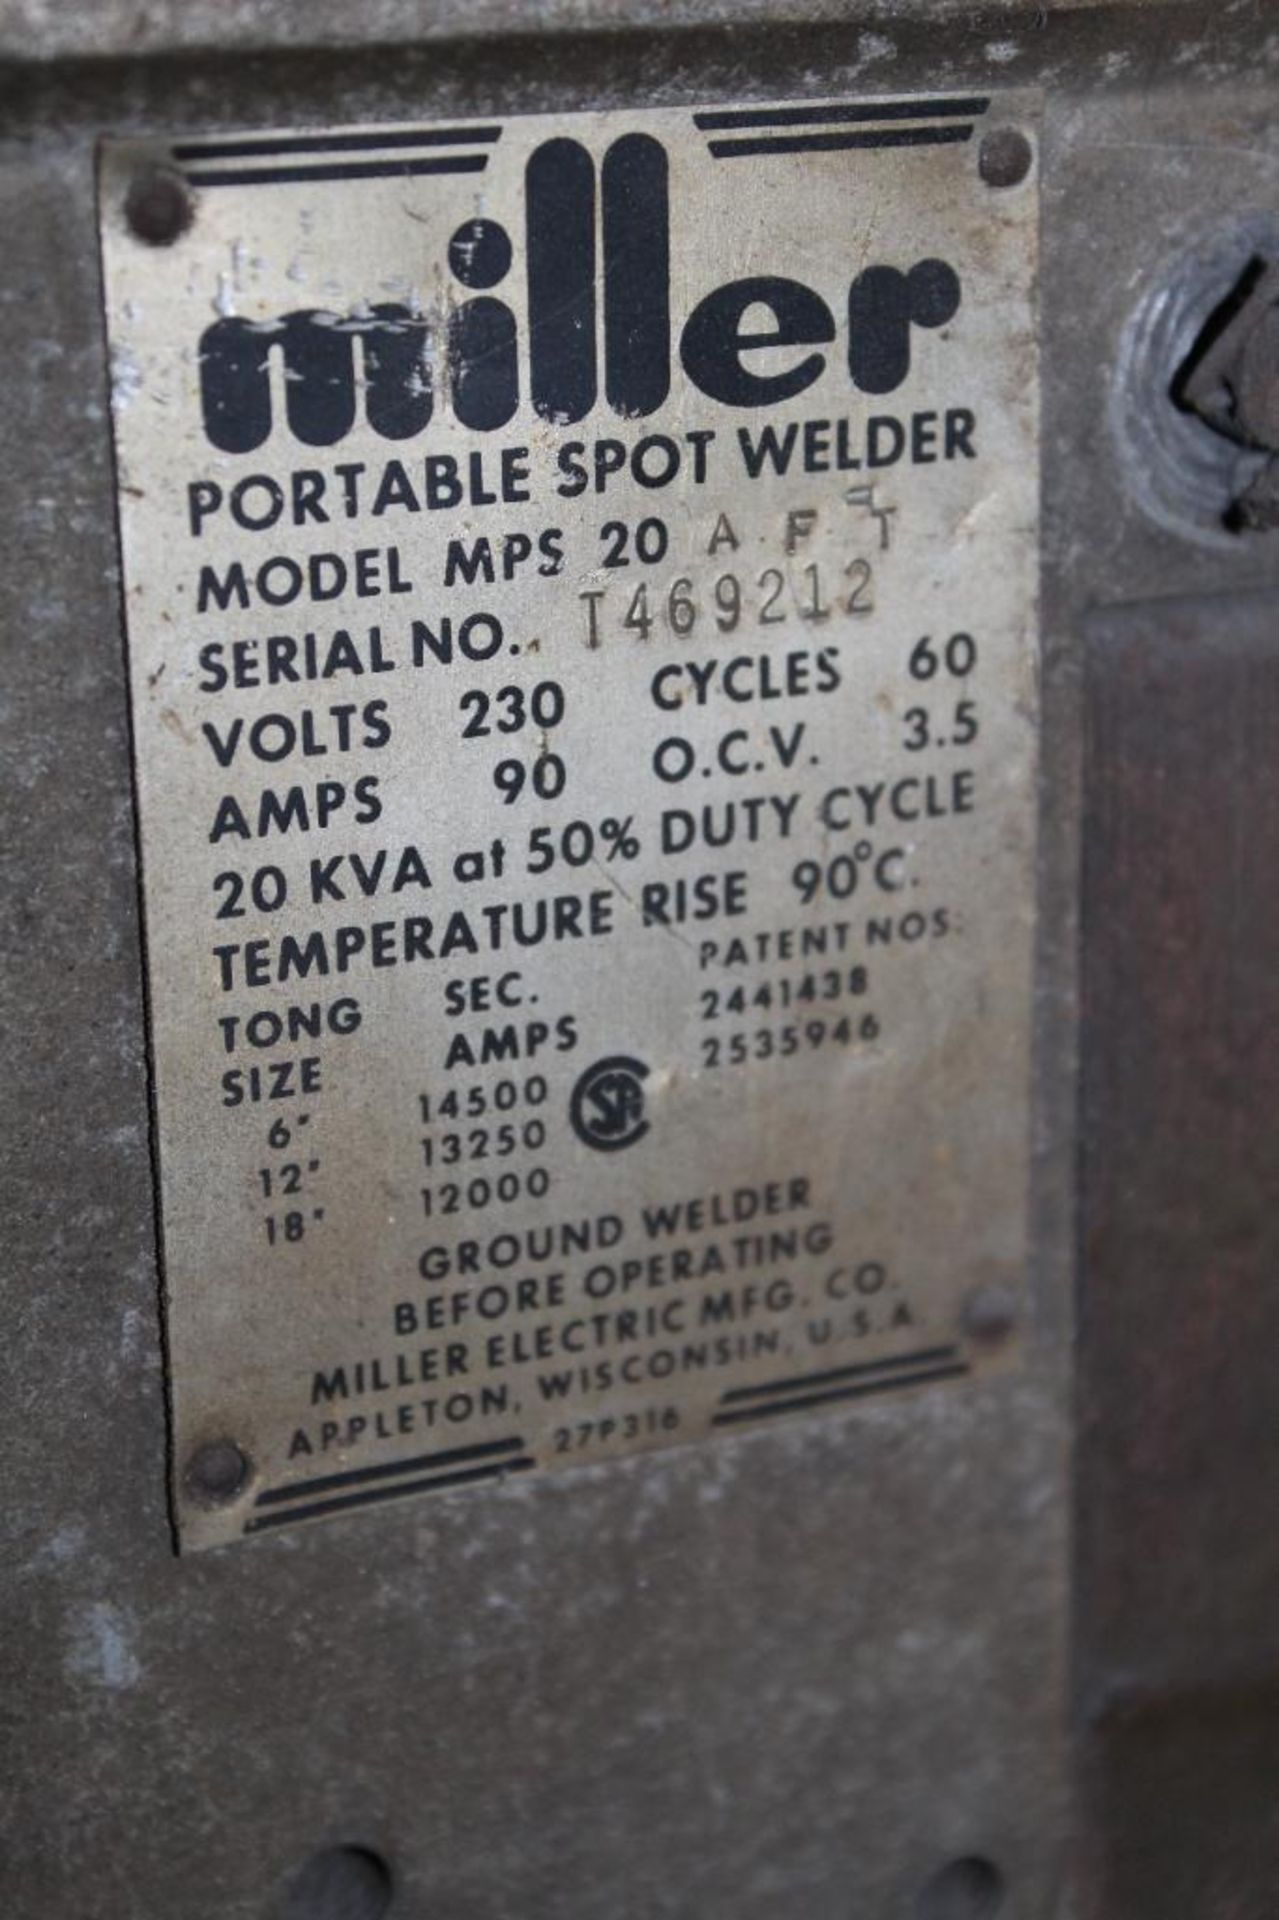 Portable Miller Spot Welder Model MDS 20 AFT - Image 2 of 8